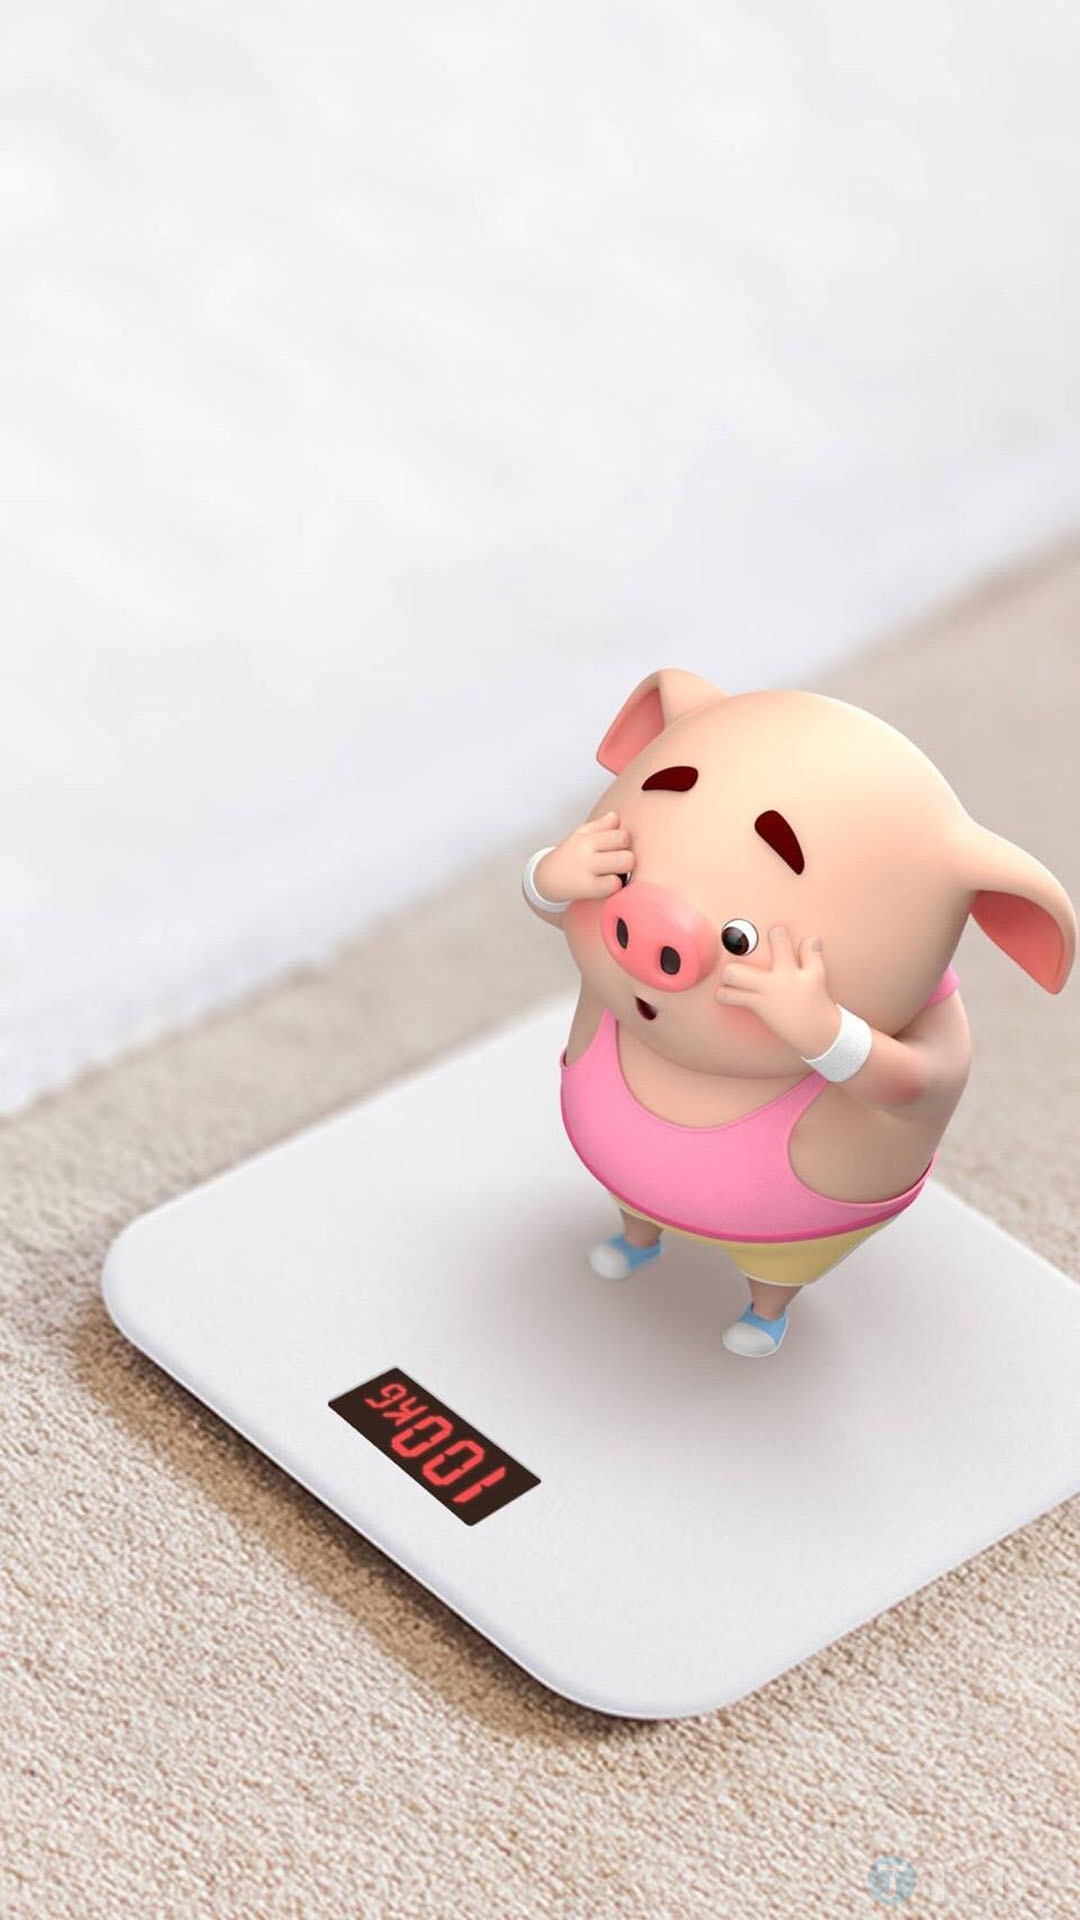 Hình nền chibi Lợn Con Ủn Ỉn 2019 cực cute cho điện thoại và máy tính | Lợn  con, Lợn, Minh họa động vật